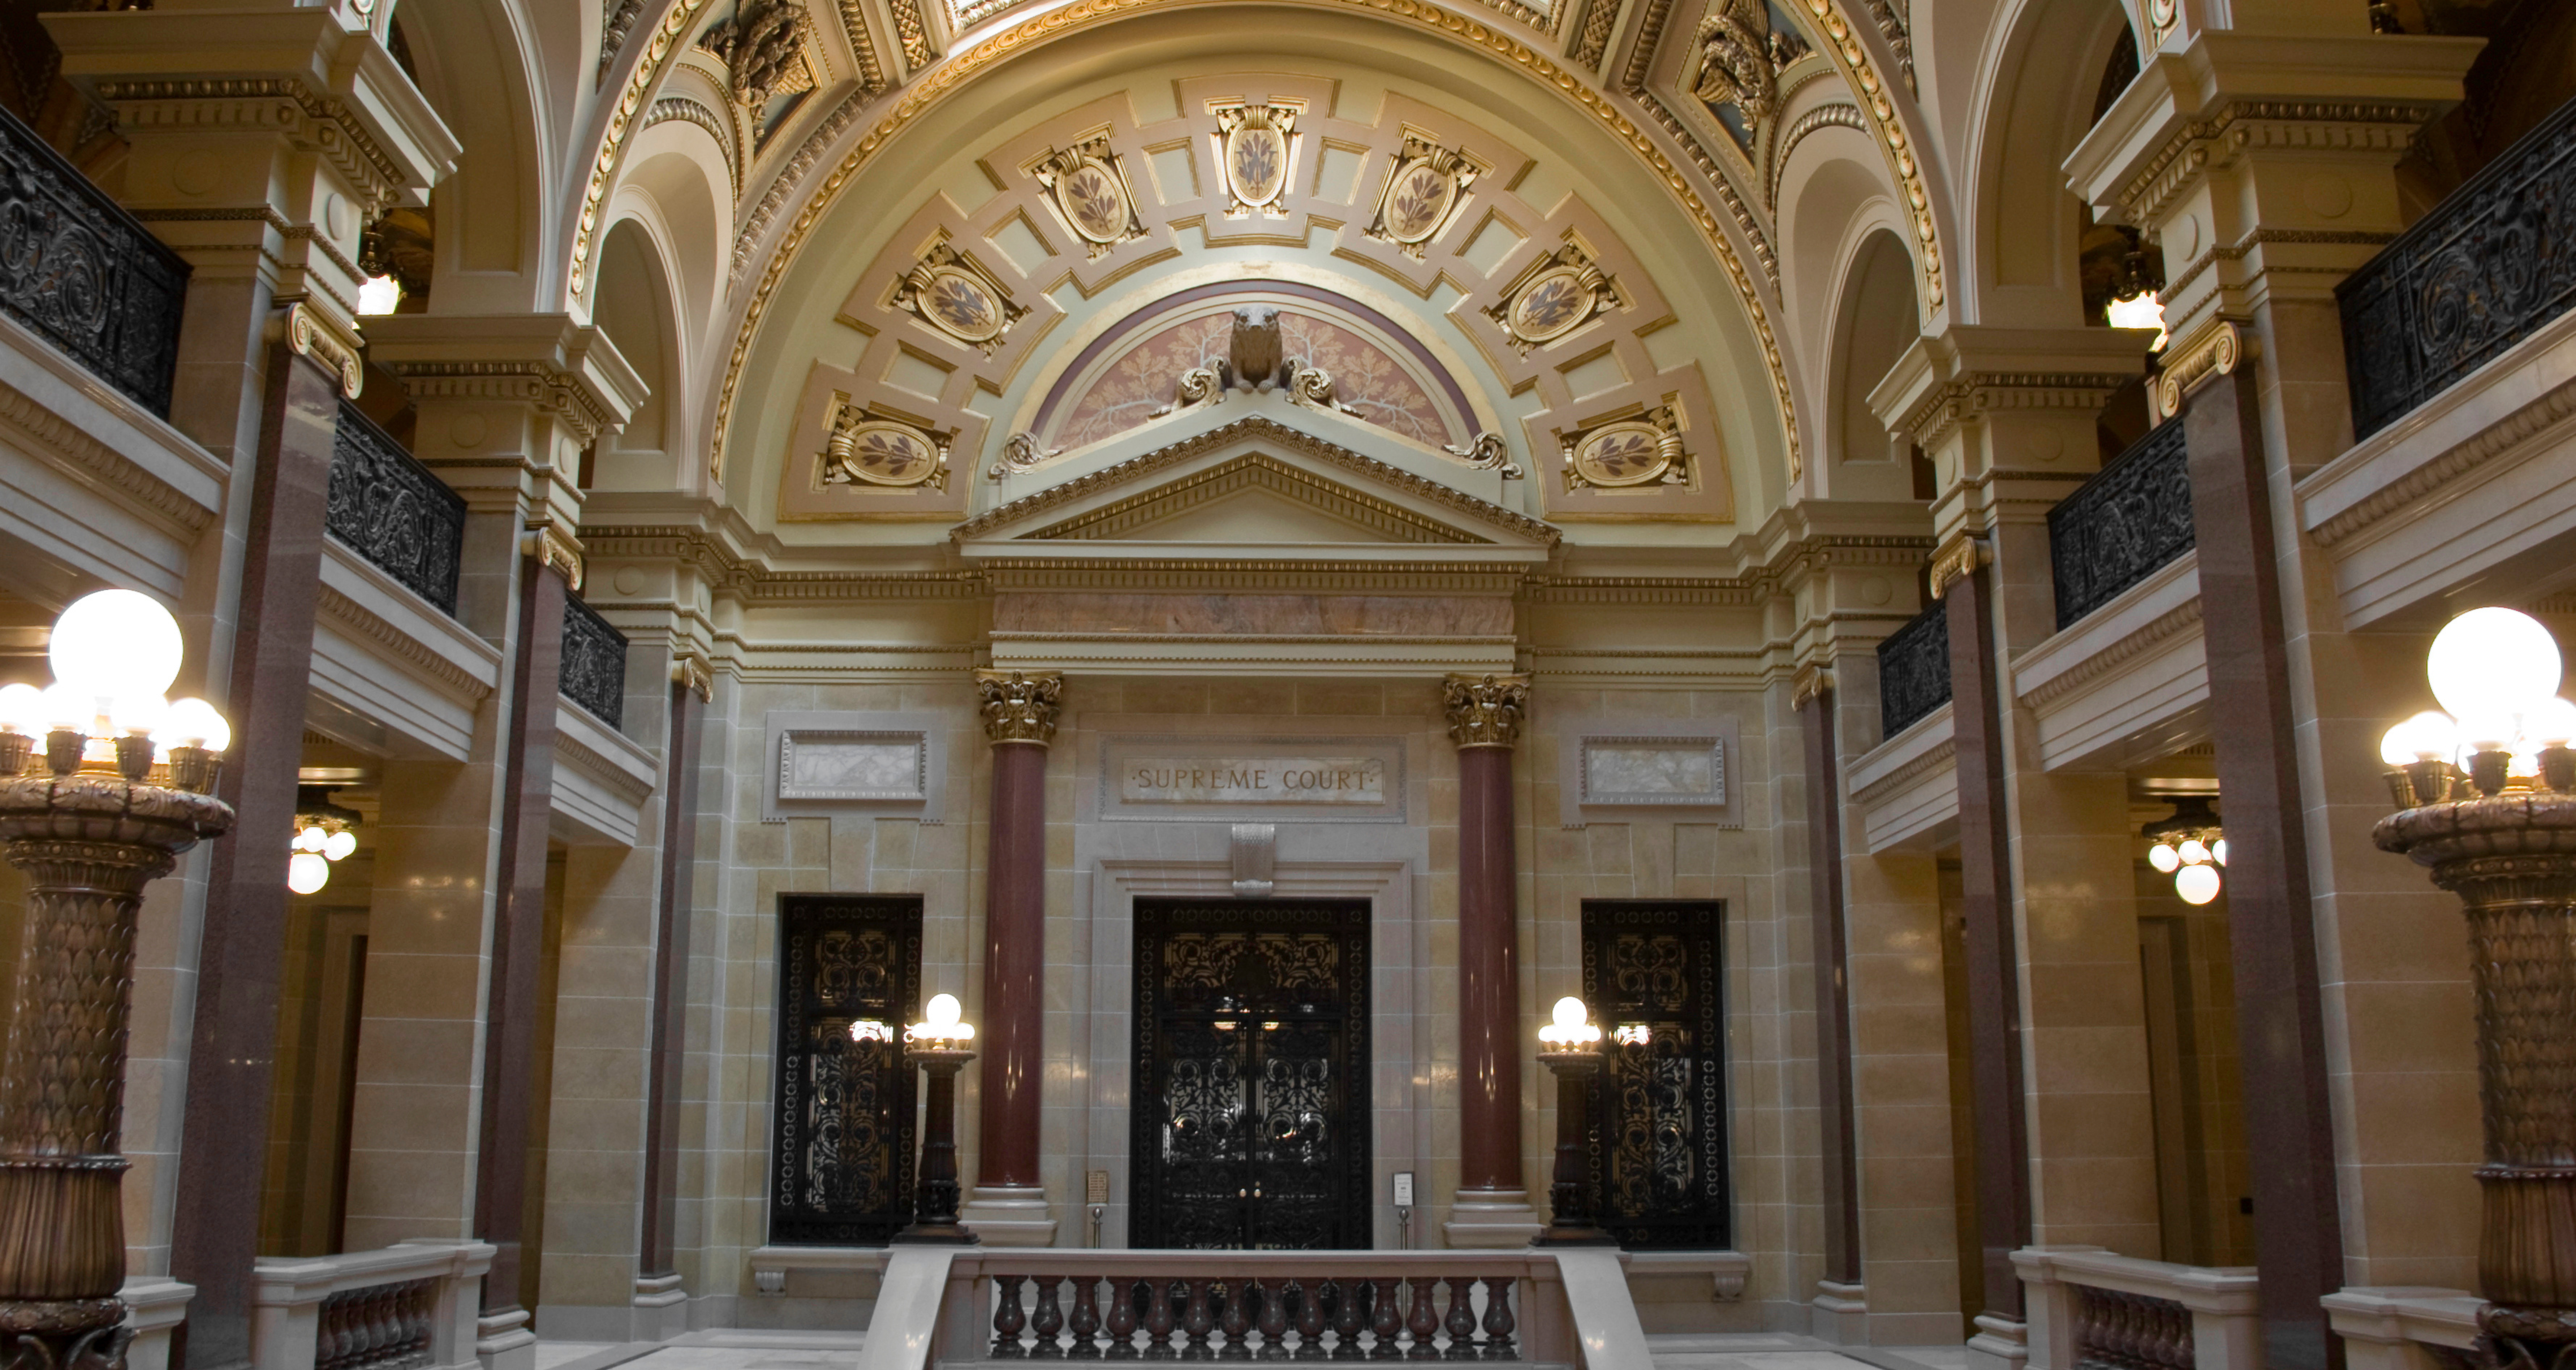 Foto: Halle des Supreme Courts im Kapitol in Wisconsin